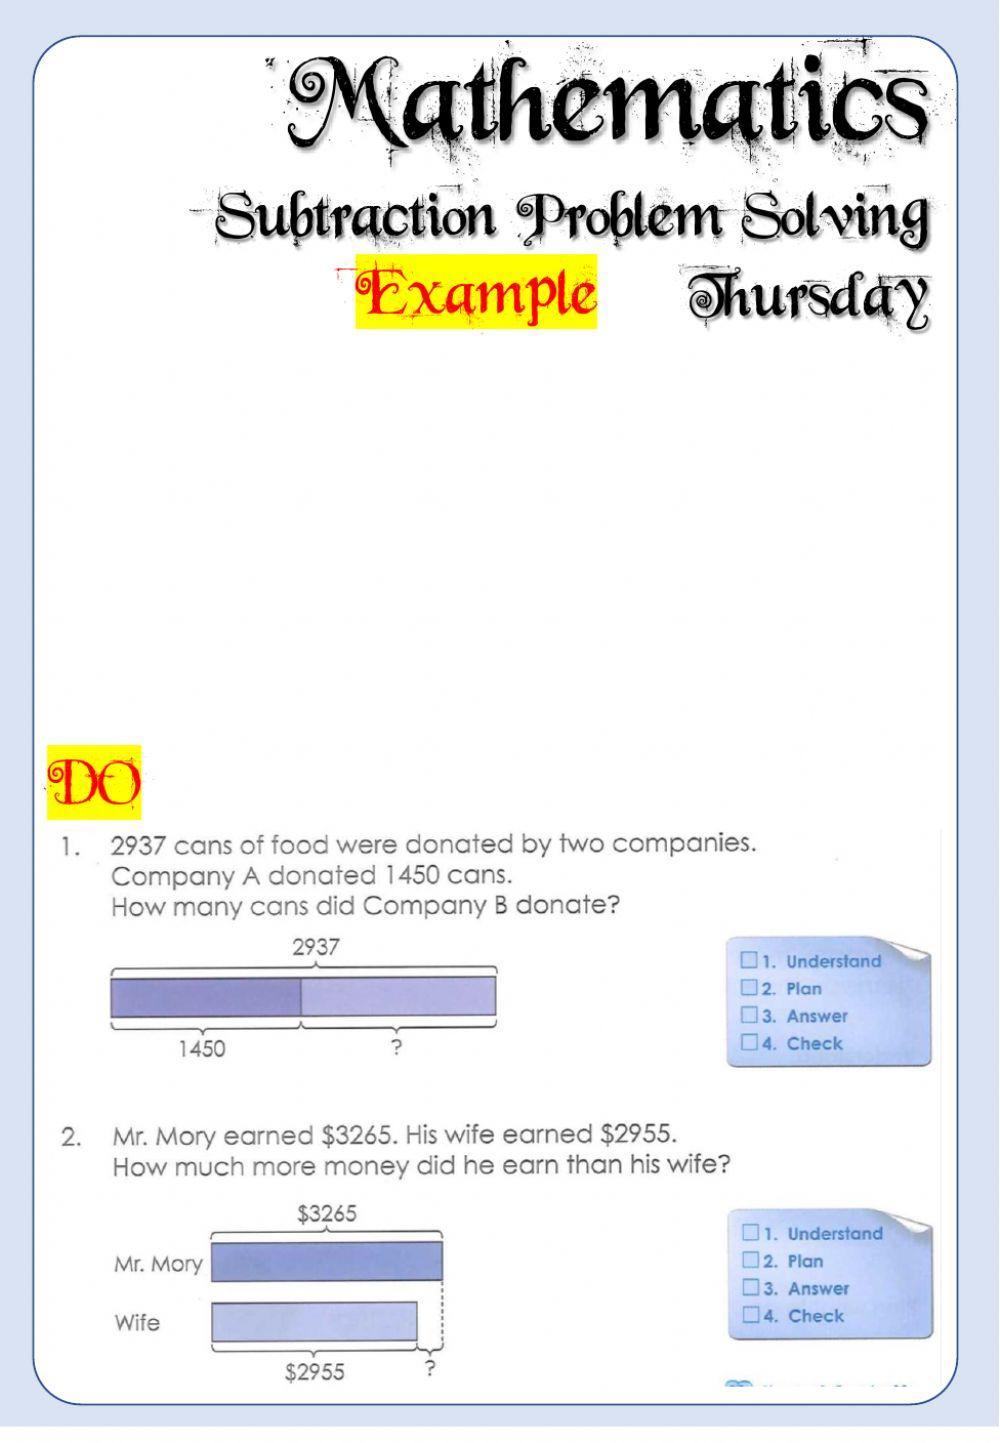 Week 20 - Thursday - Maths 4 and 5